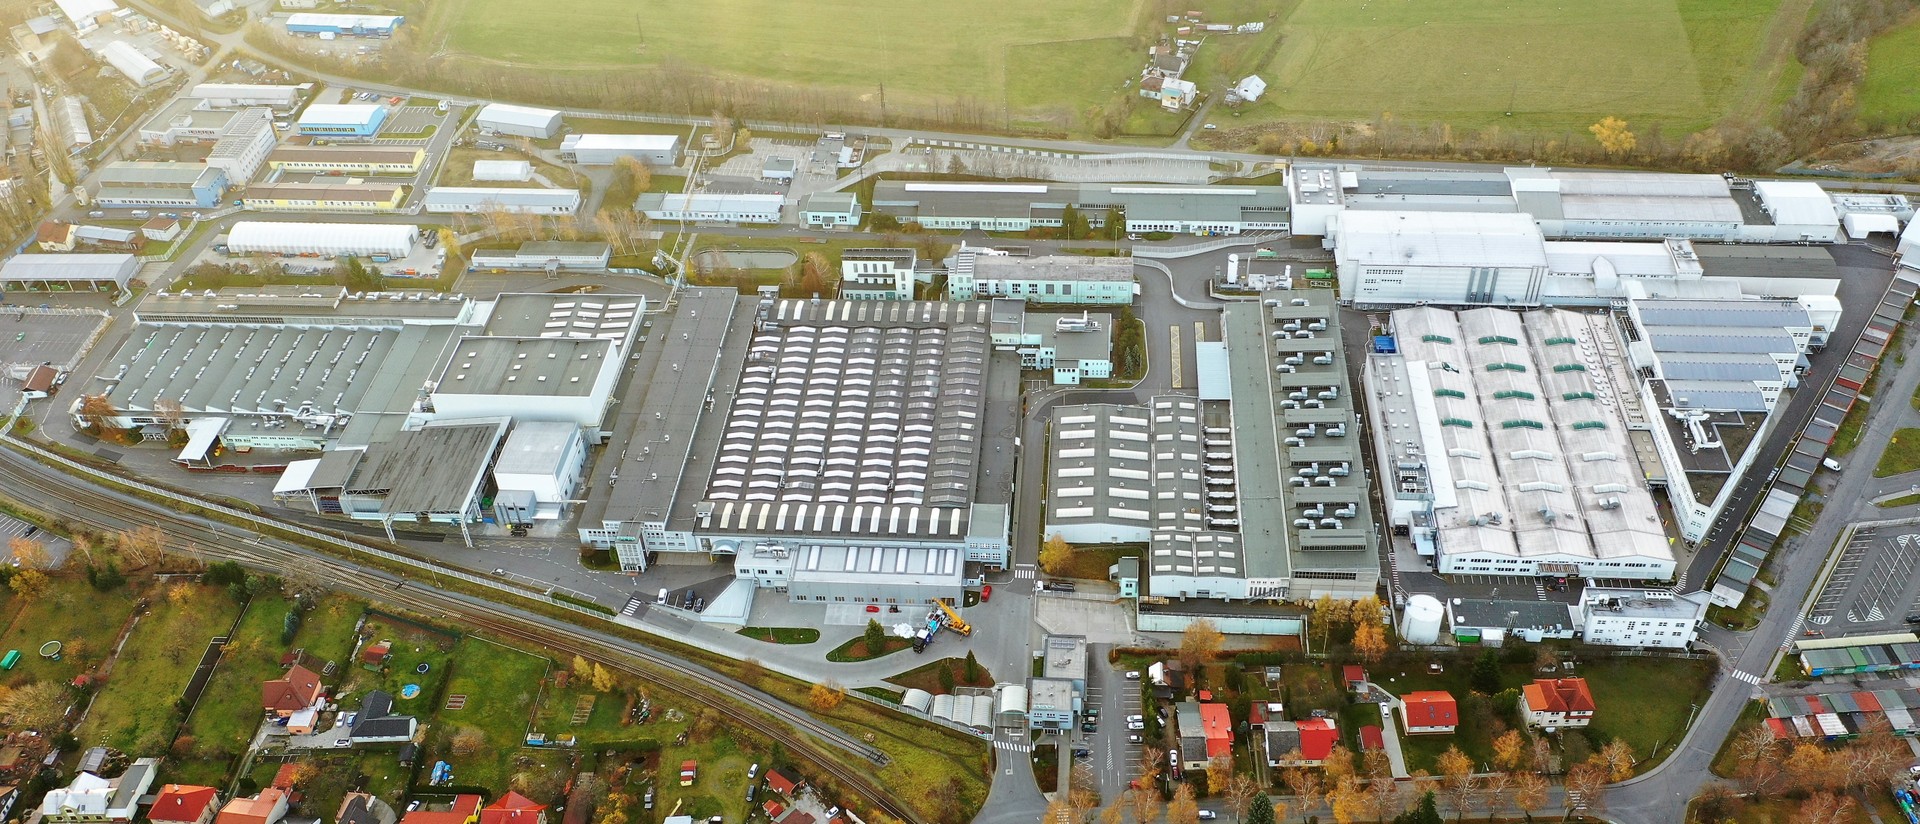 Výrobní závod Siemens ve Frenštátě pod Radhoštěm